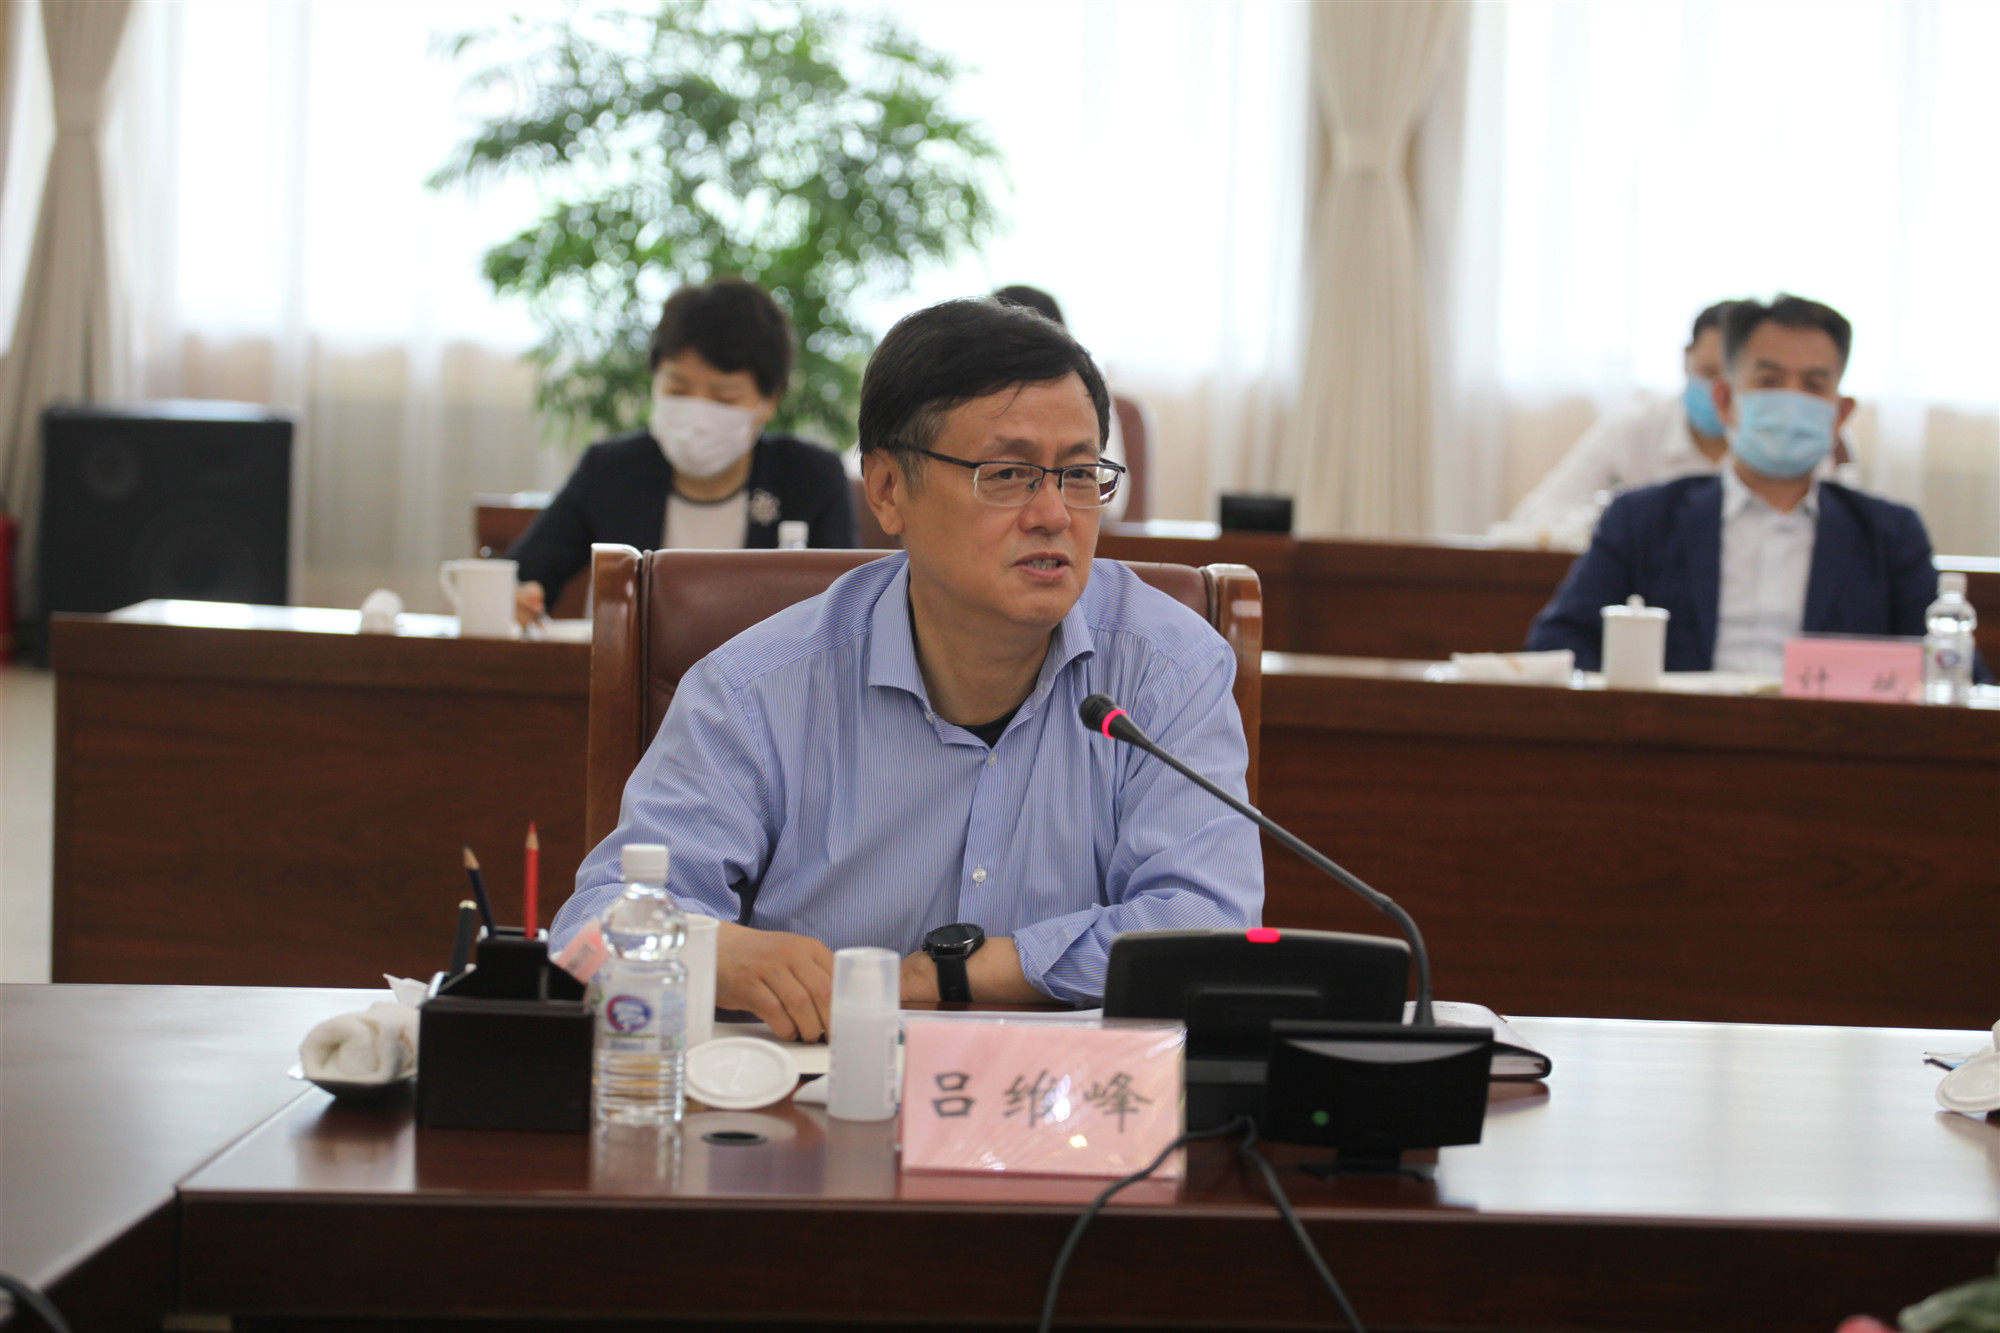 1省政协副主席吕维峰出席会议并发言.jpg